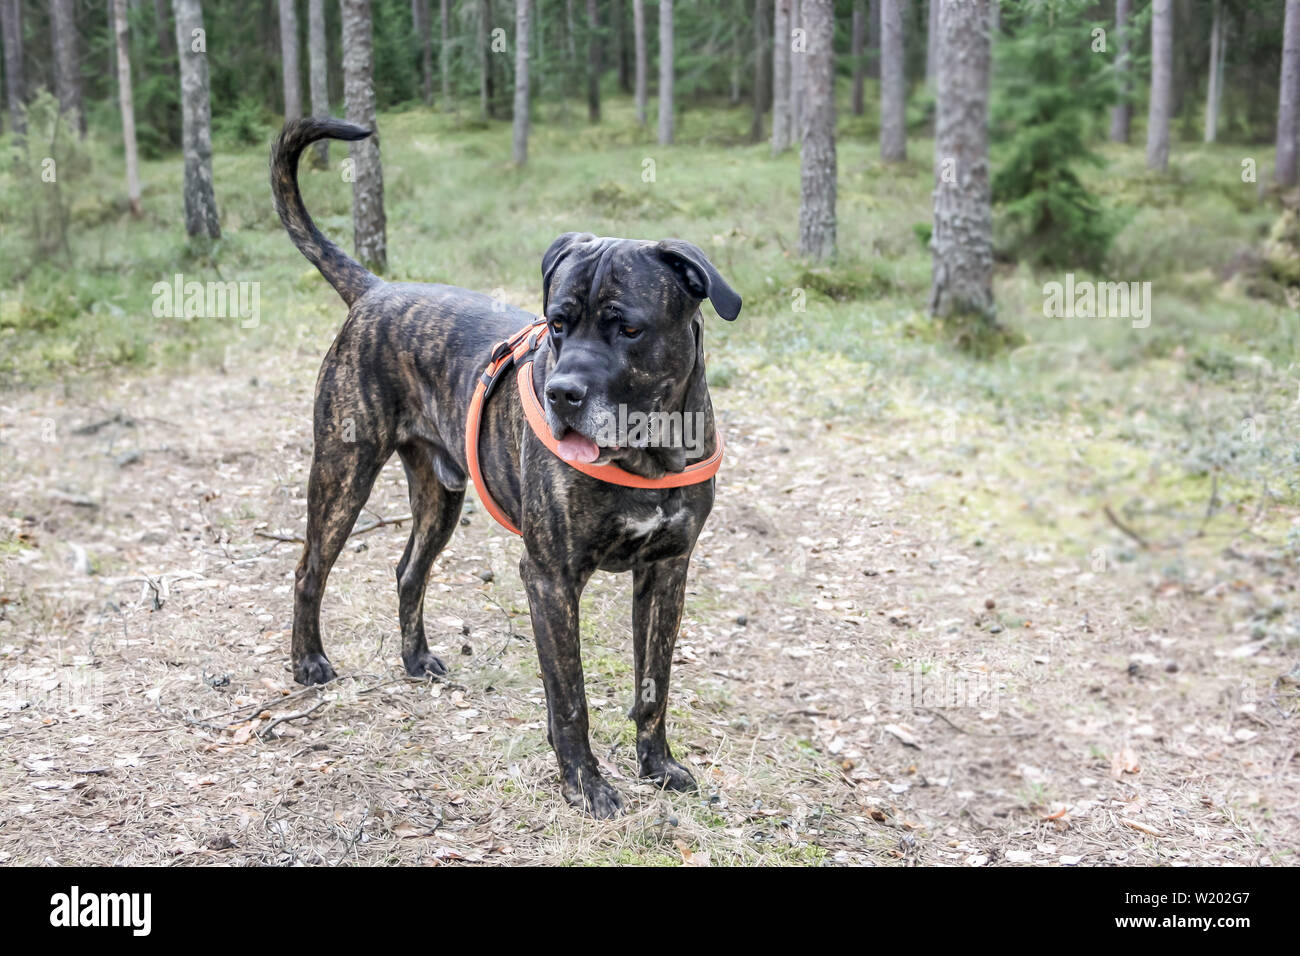 Cane Corso Hund steht und sieht in den Wäldern und der Straße Stockfoto